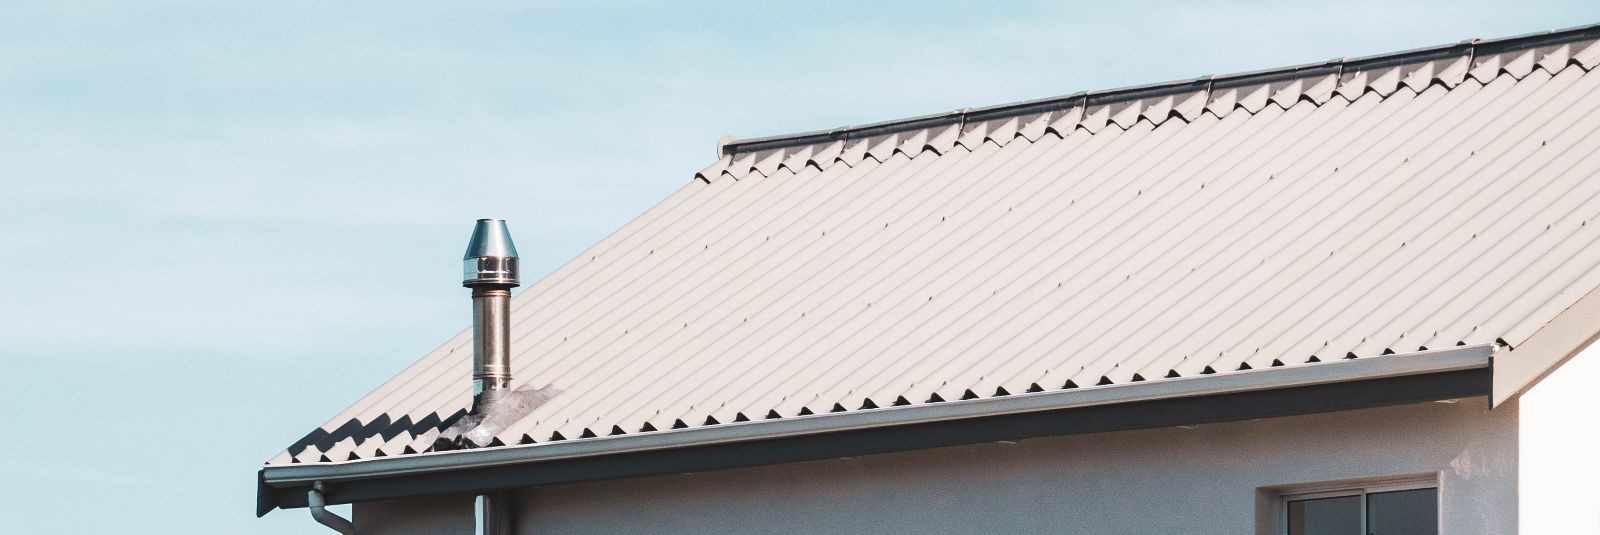 Kui räägime katustest, on oluline meeles pidada, et kvaliteet ja ohutus käivad käsikäes. Just see on põhjus, miks Merbest OÜ on pühendunud pakkuma oma klientide